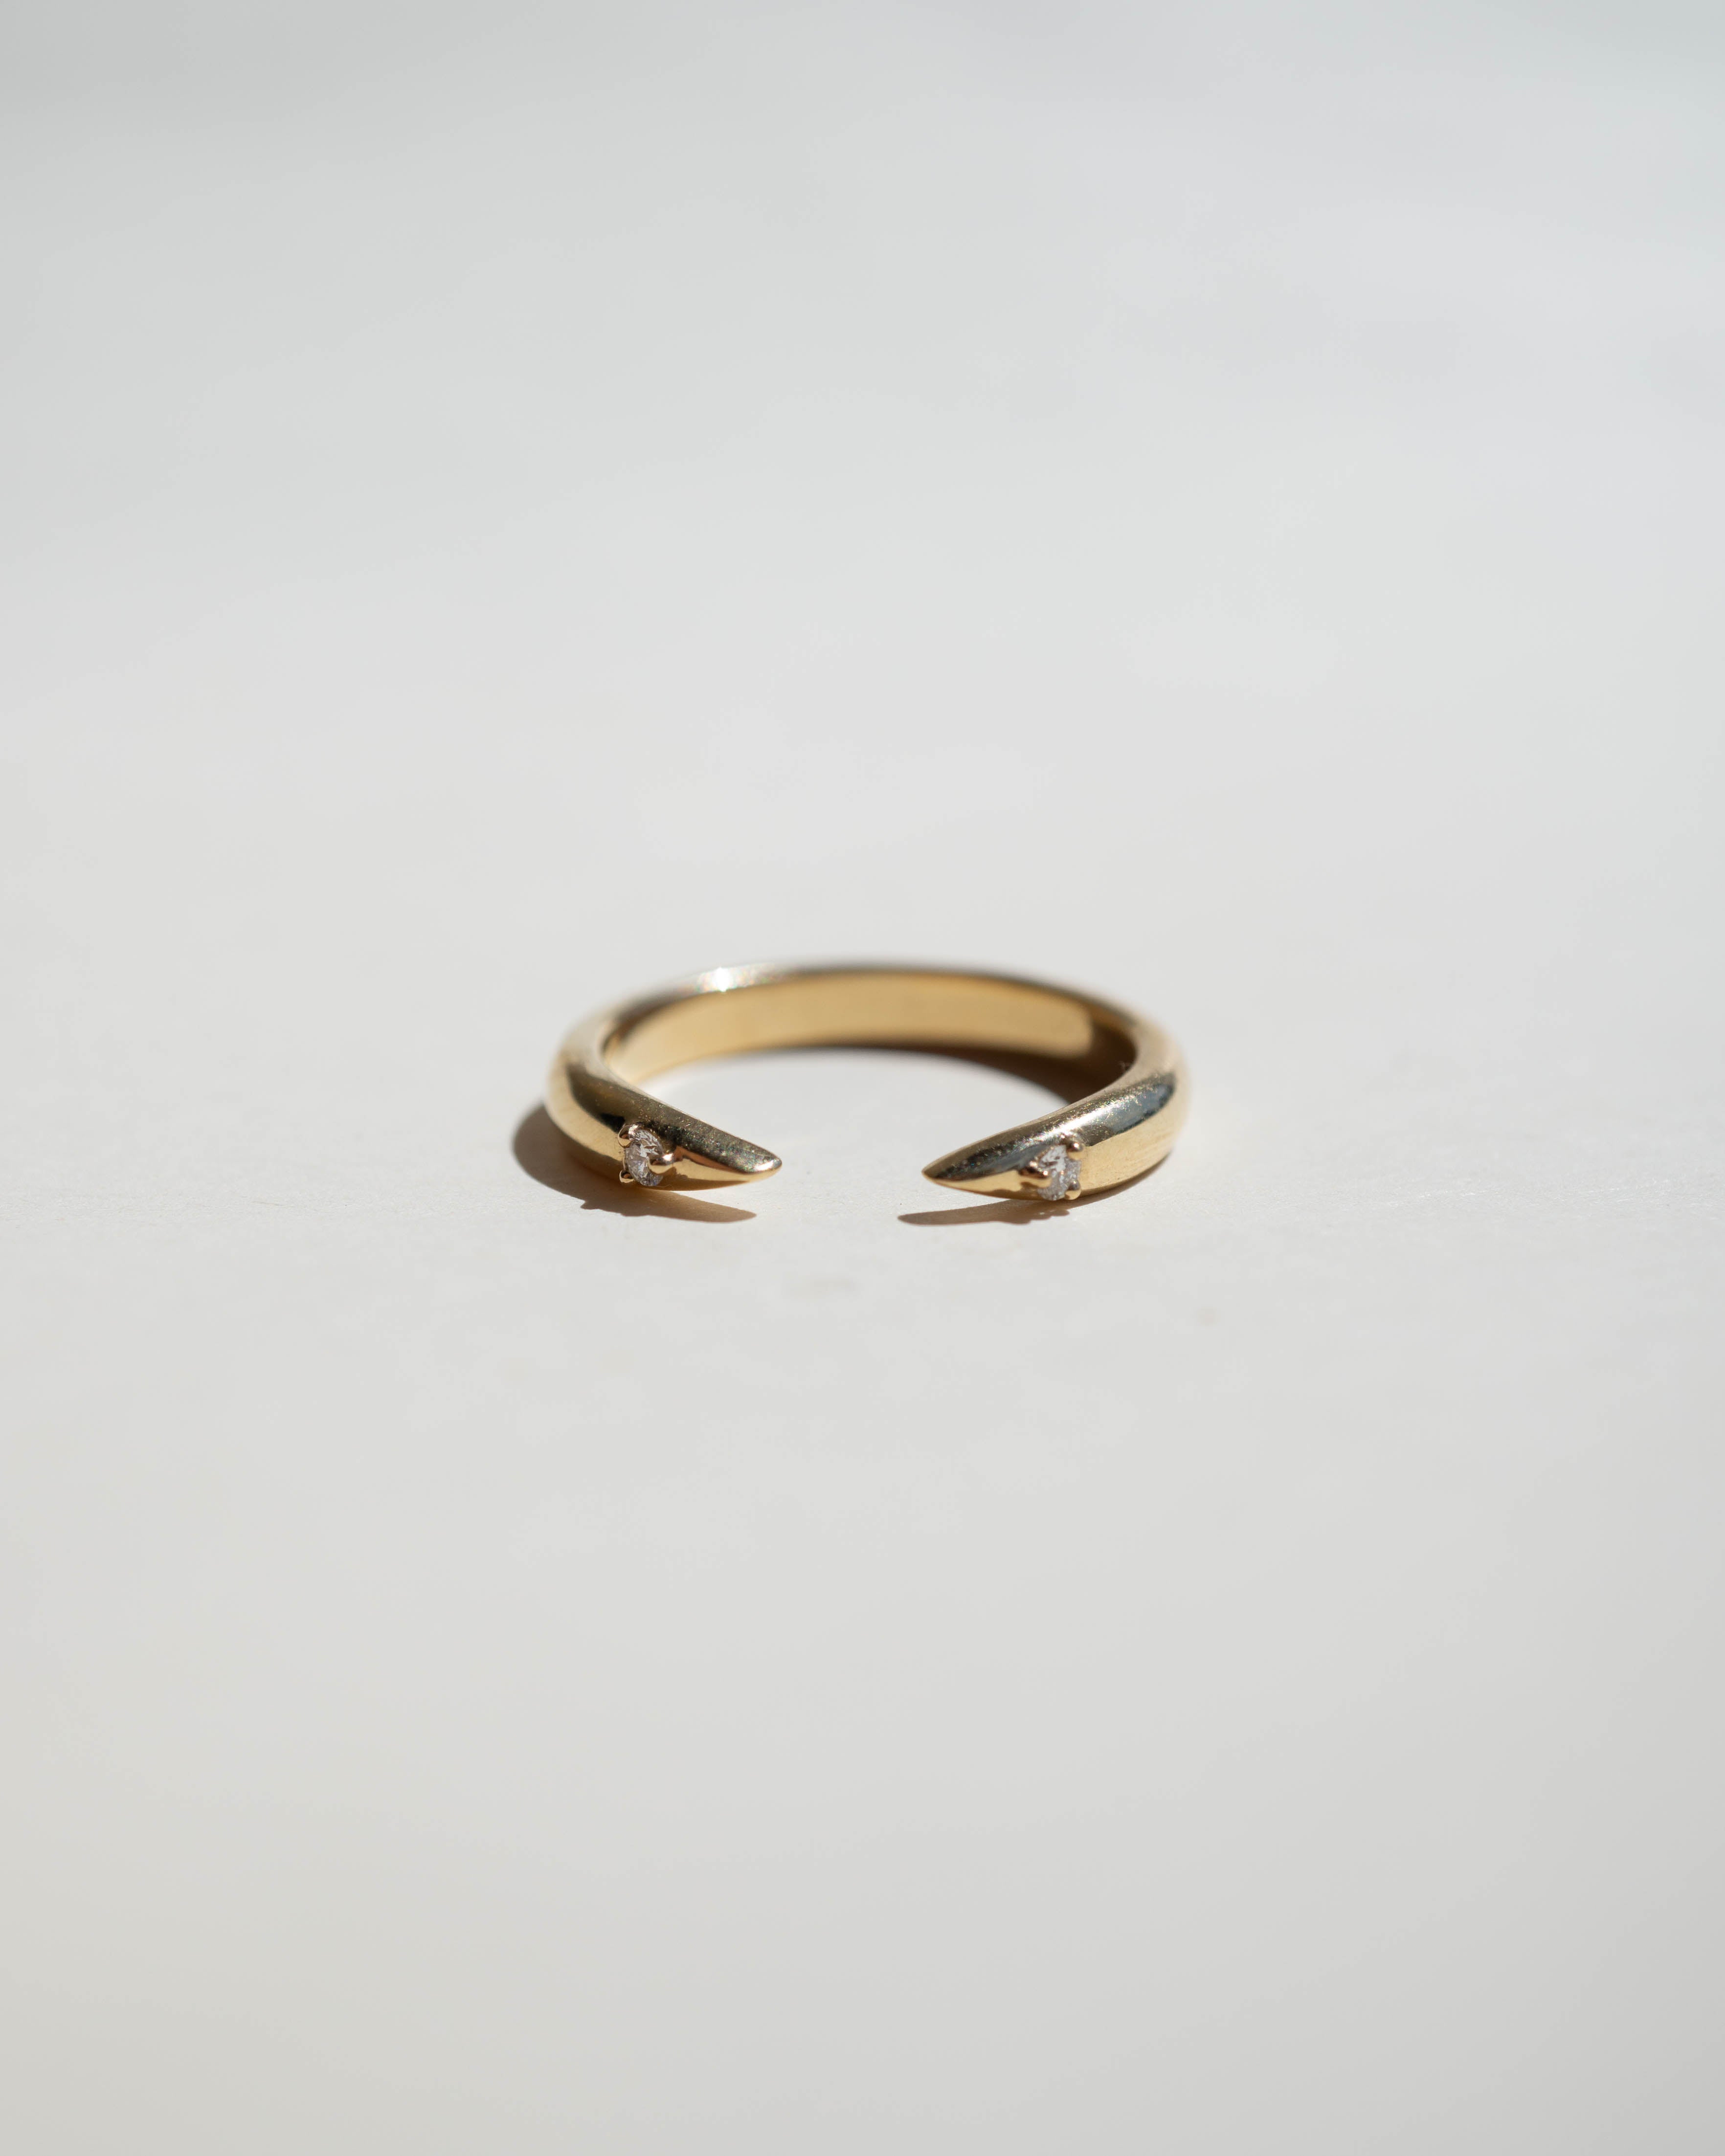 Sierra Ring with Diamonds - Foe & Dear